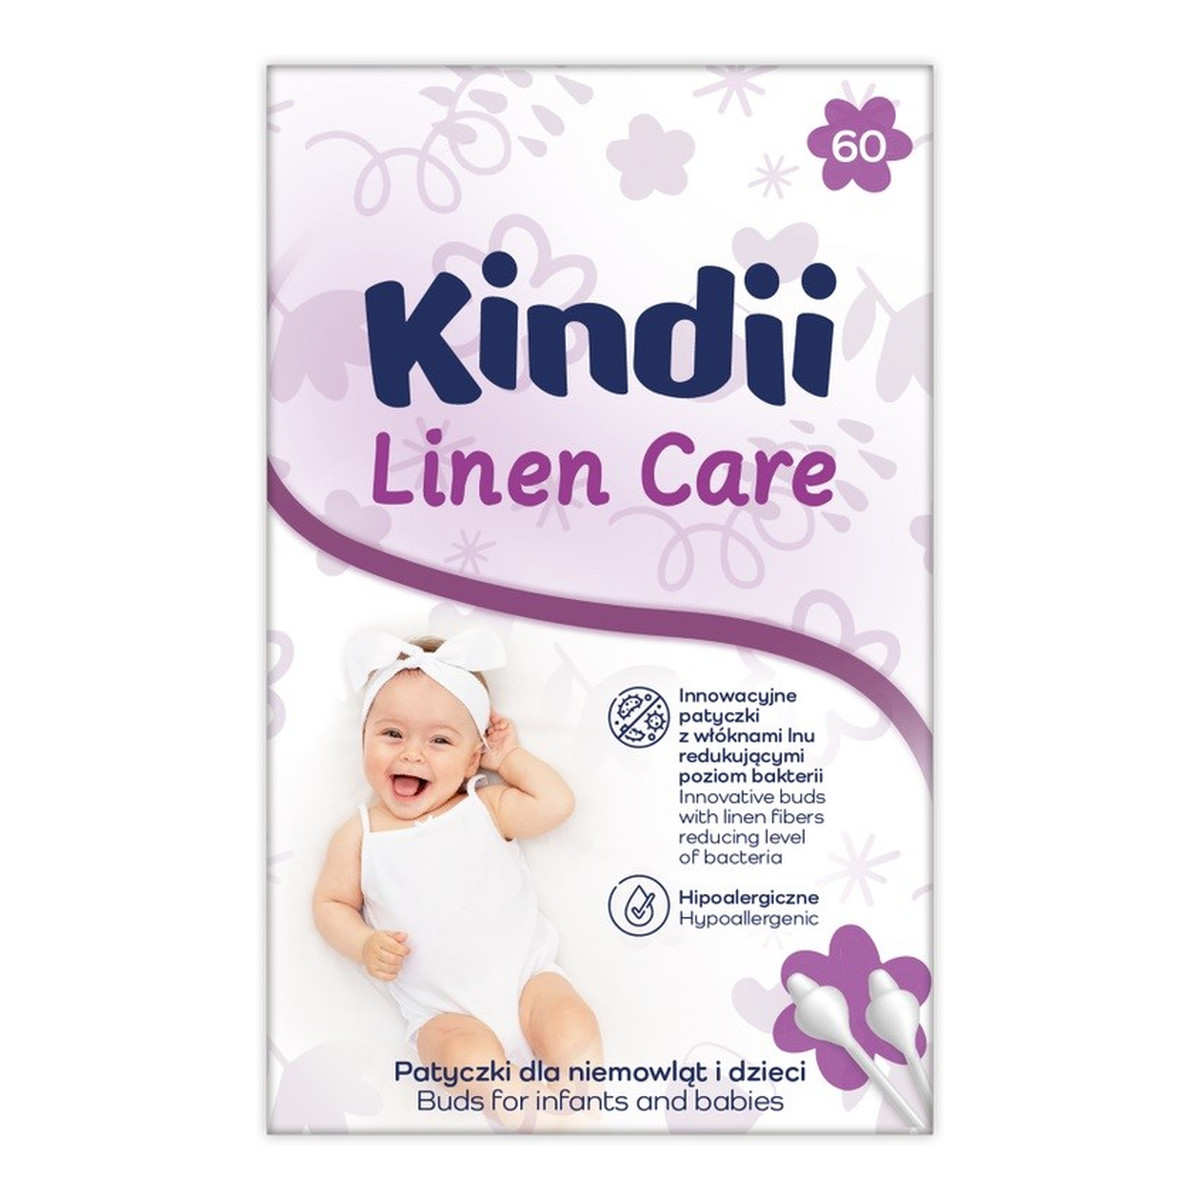 Kindii Linen Care patyczki dla niemowląt i dzieci 1op.-60szt